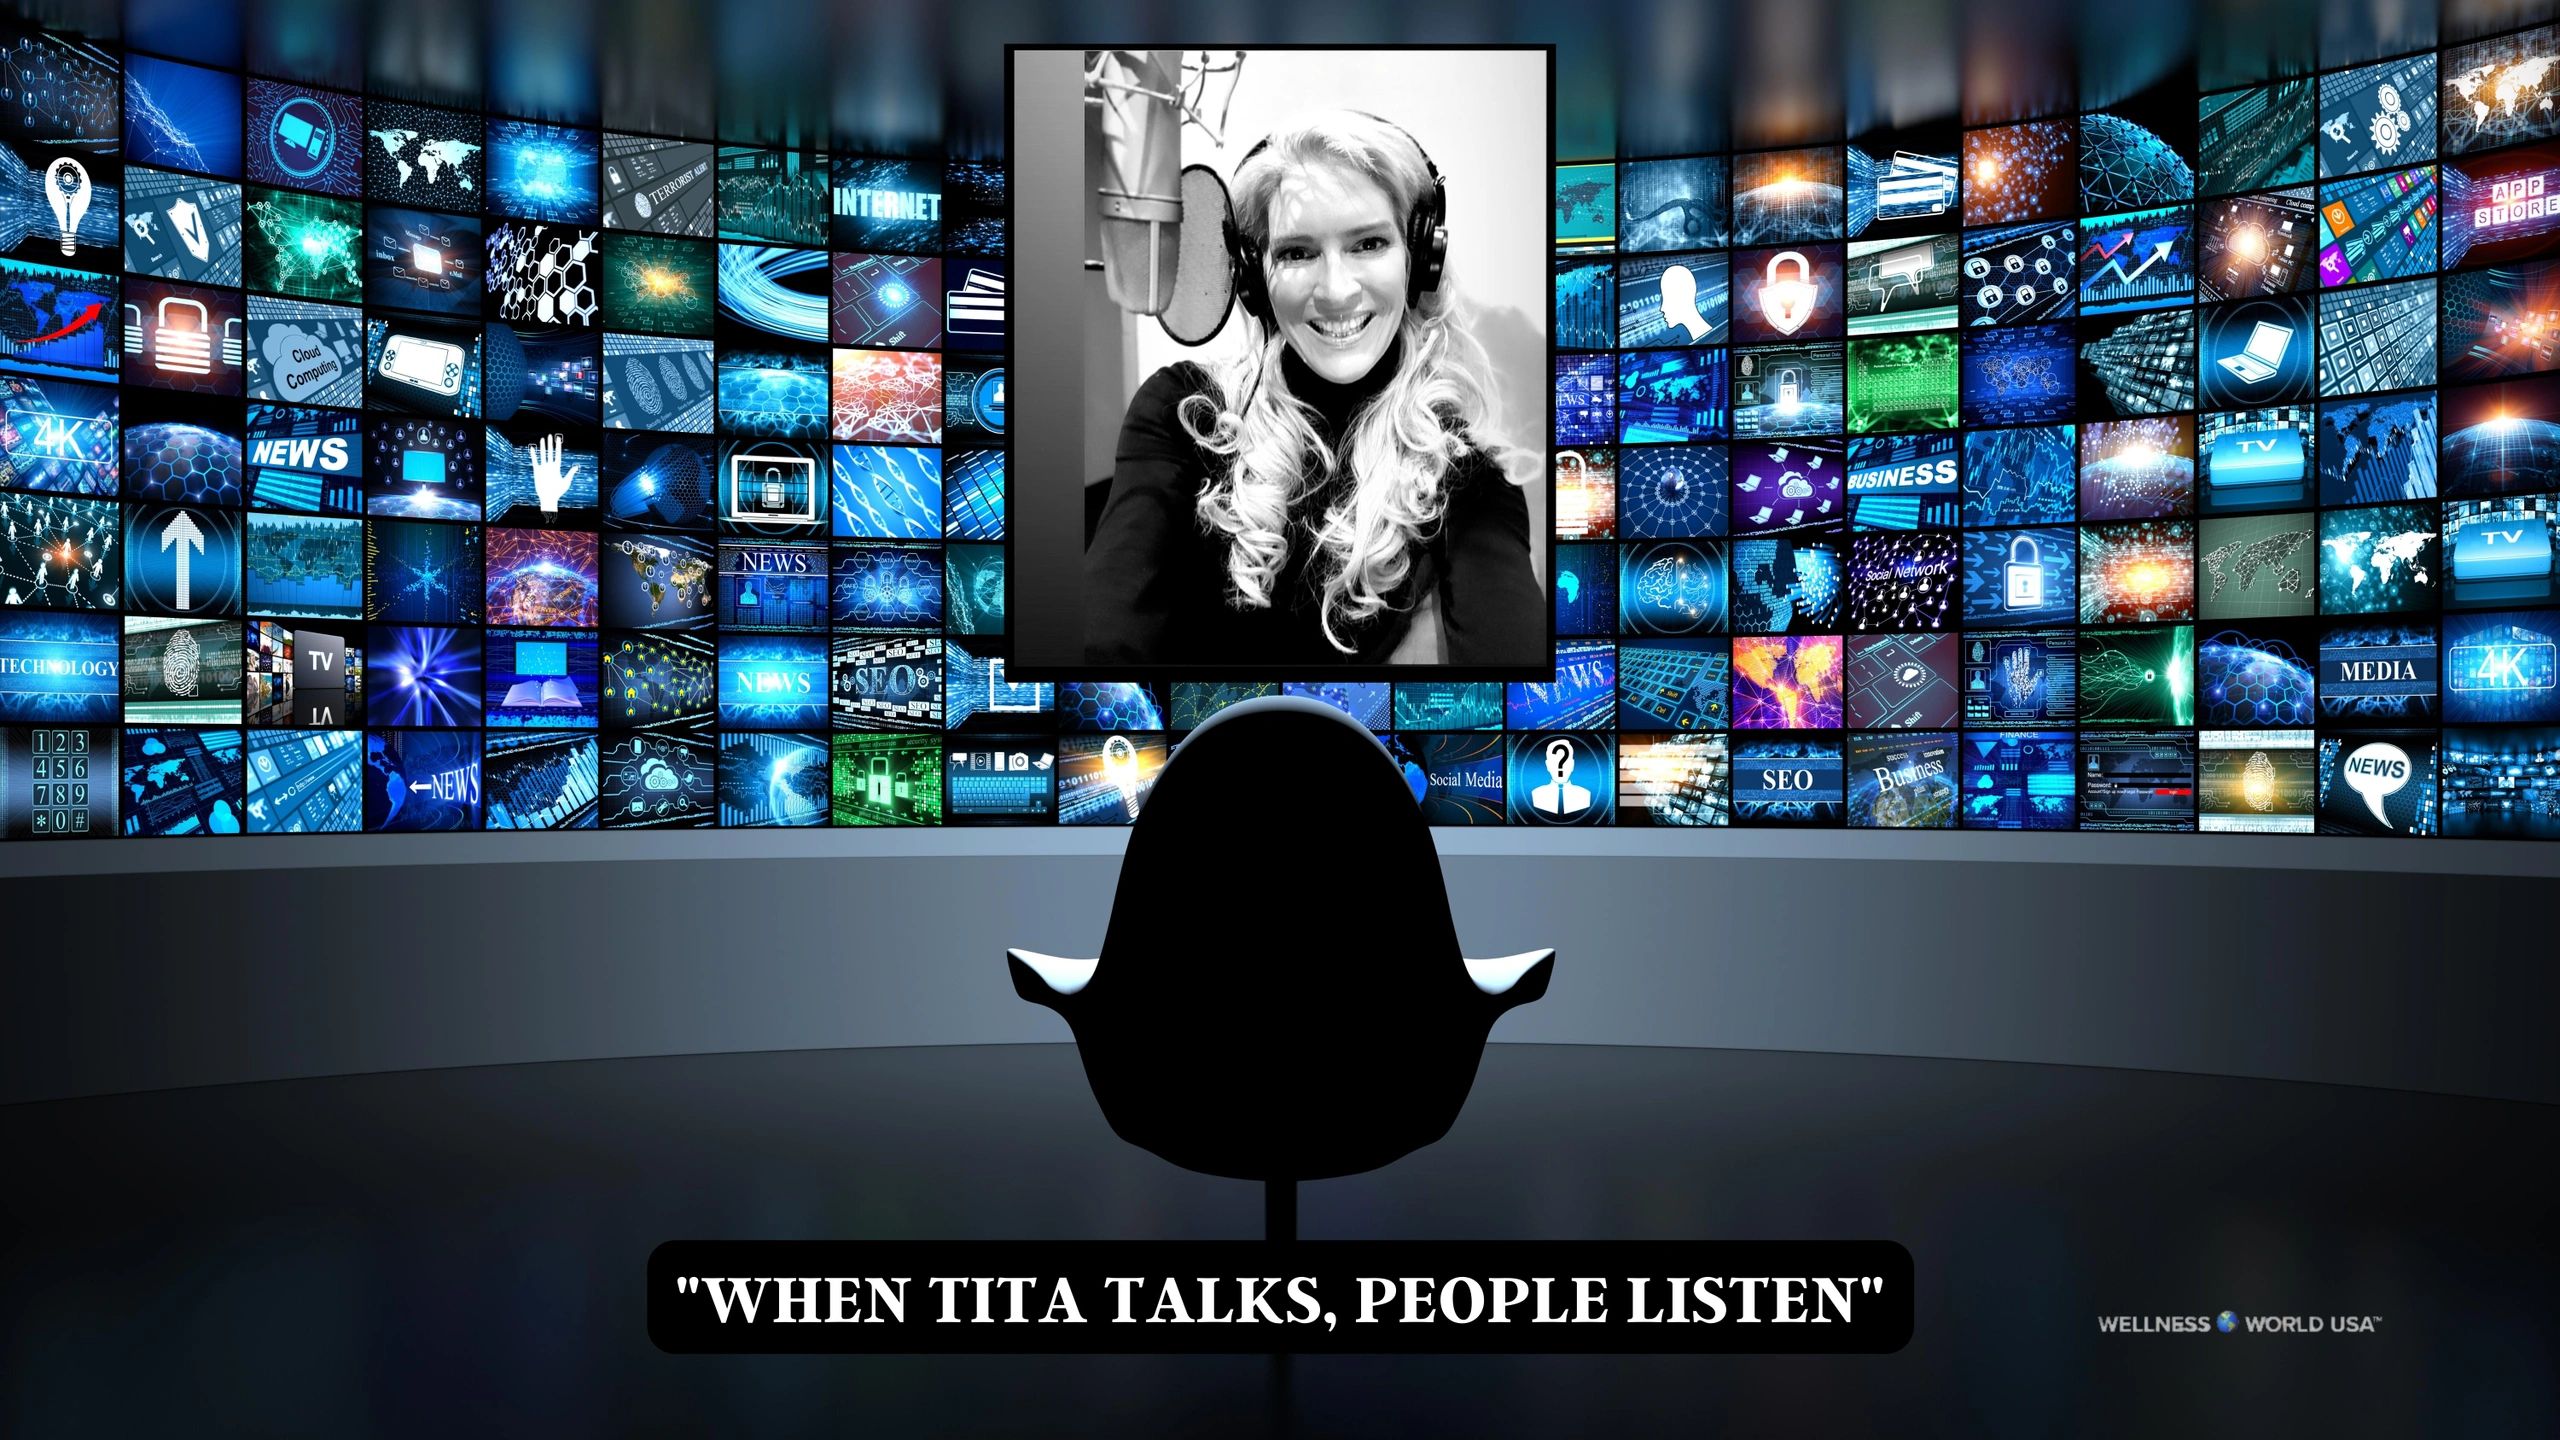 SONIA TITA PUOPOLO PRESENTS A WELLNESS WORLD USA™ PODCAST  TITA TALKS  